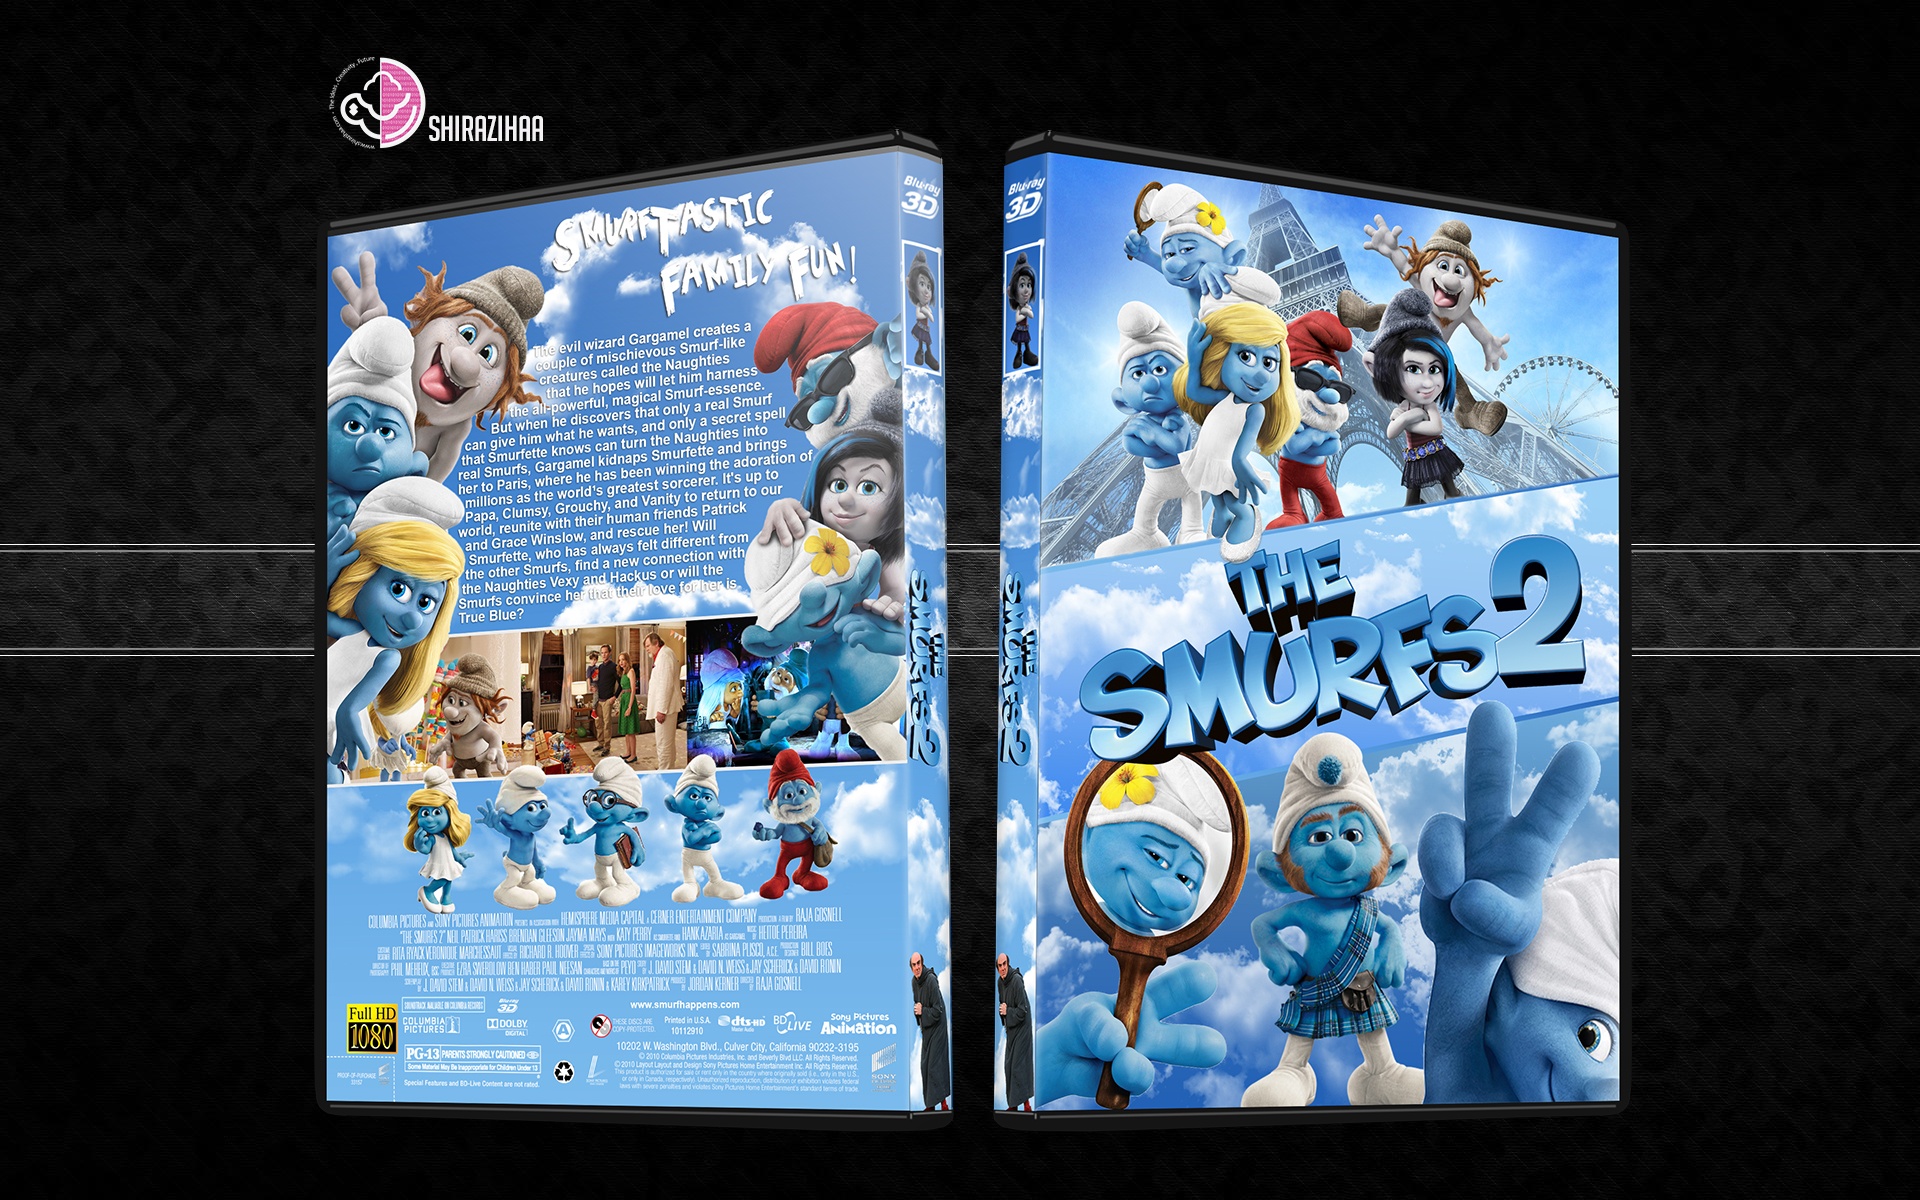 The Smurfs 2 box cover